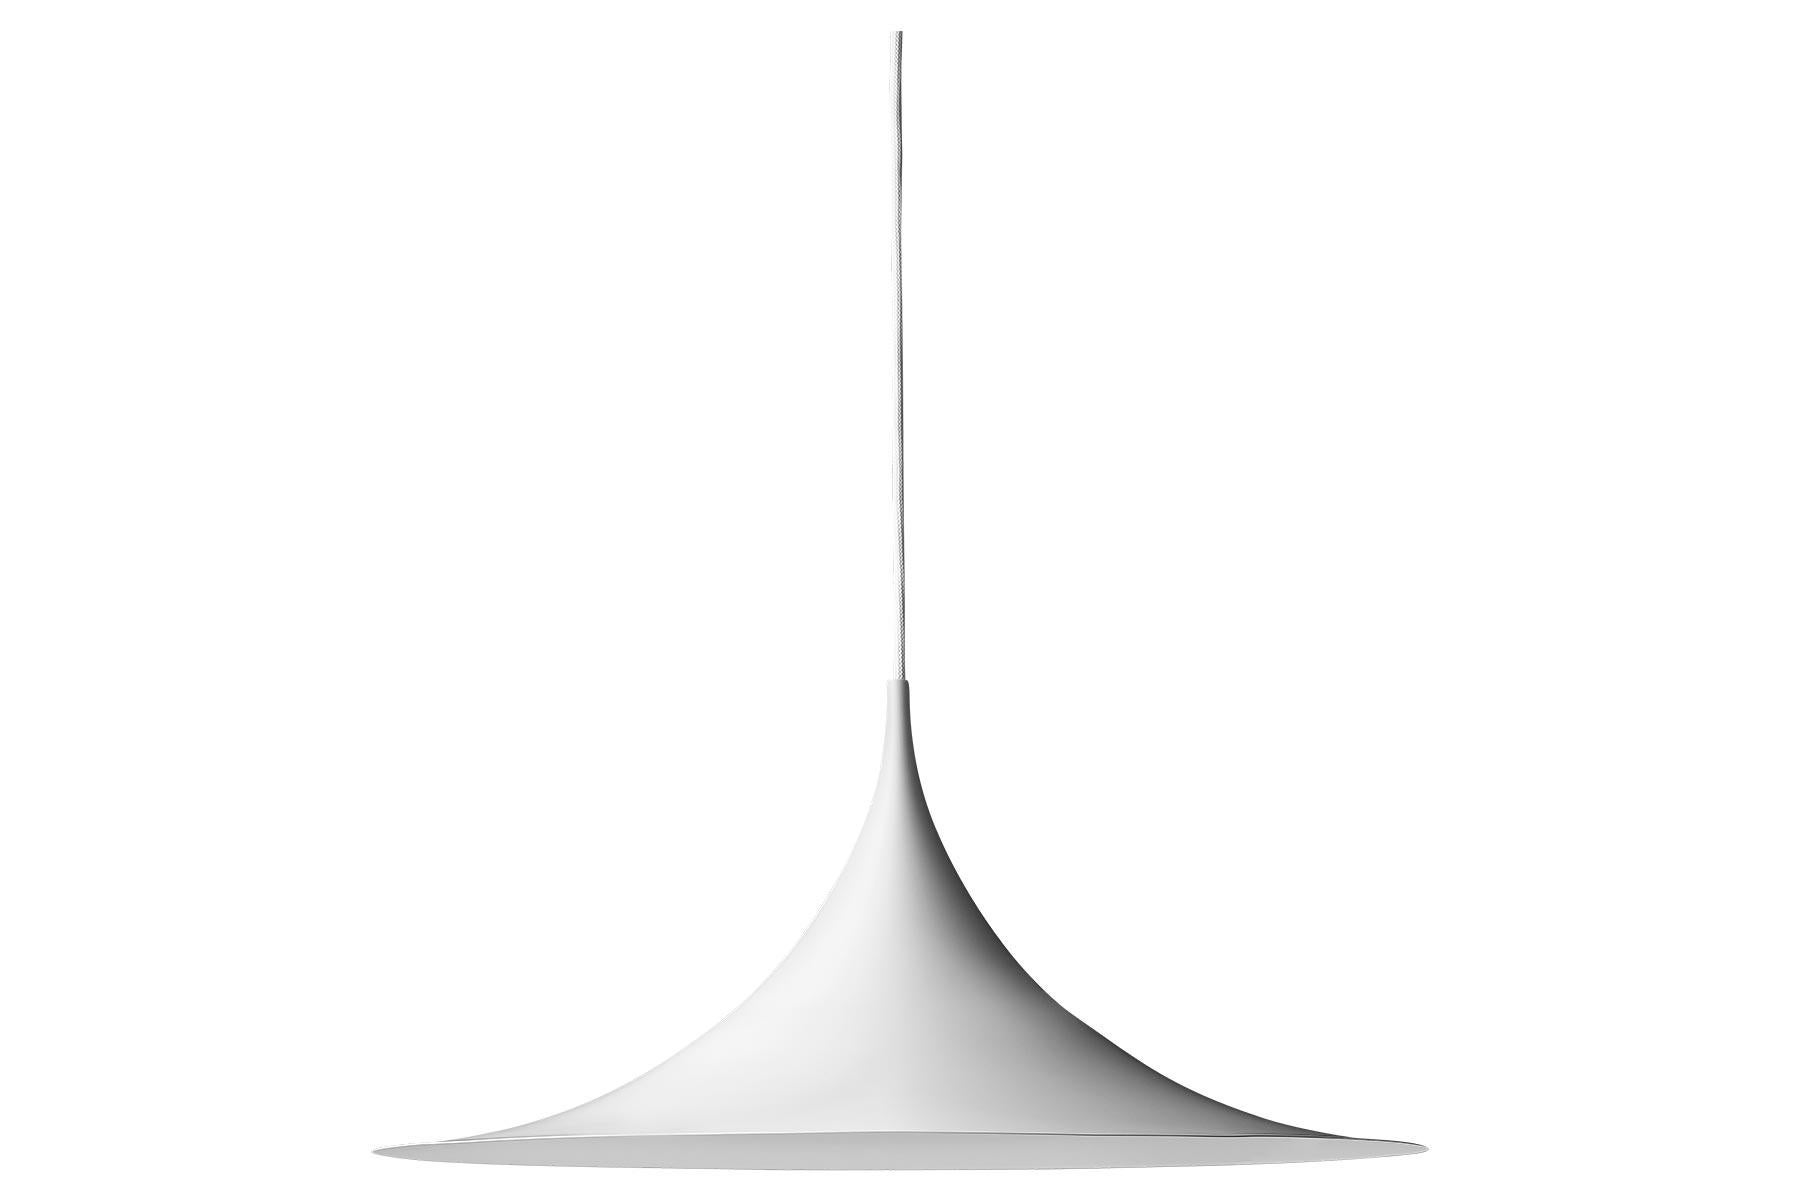 Le Semi Pendant est une lampe suspendue unique, basée sur deux quarts de cercle assemblés, dos à dos. Son abat-jour en métal émaillé en forme d'arche crée une lumière diffuse en forme de cône, idéale au-dessus d'une table à manger ou d'un plan de